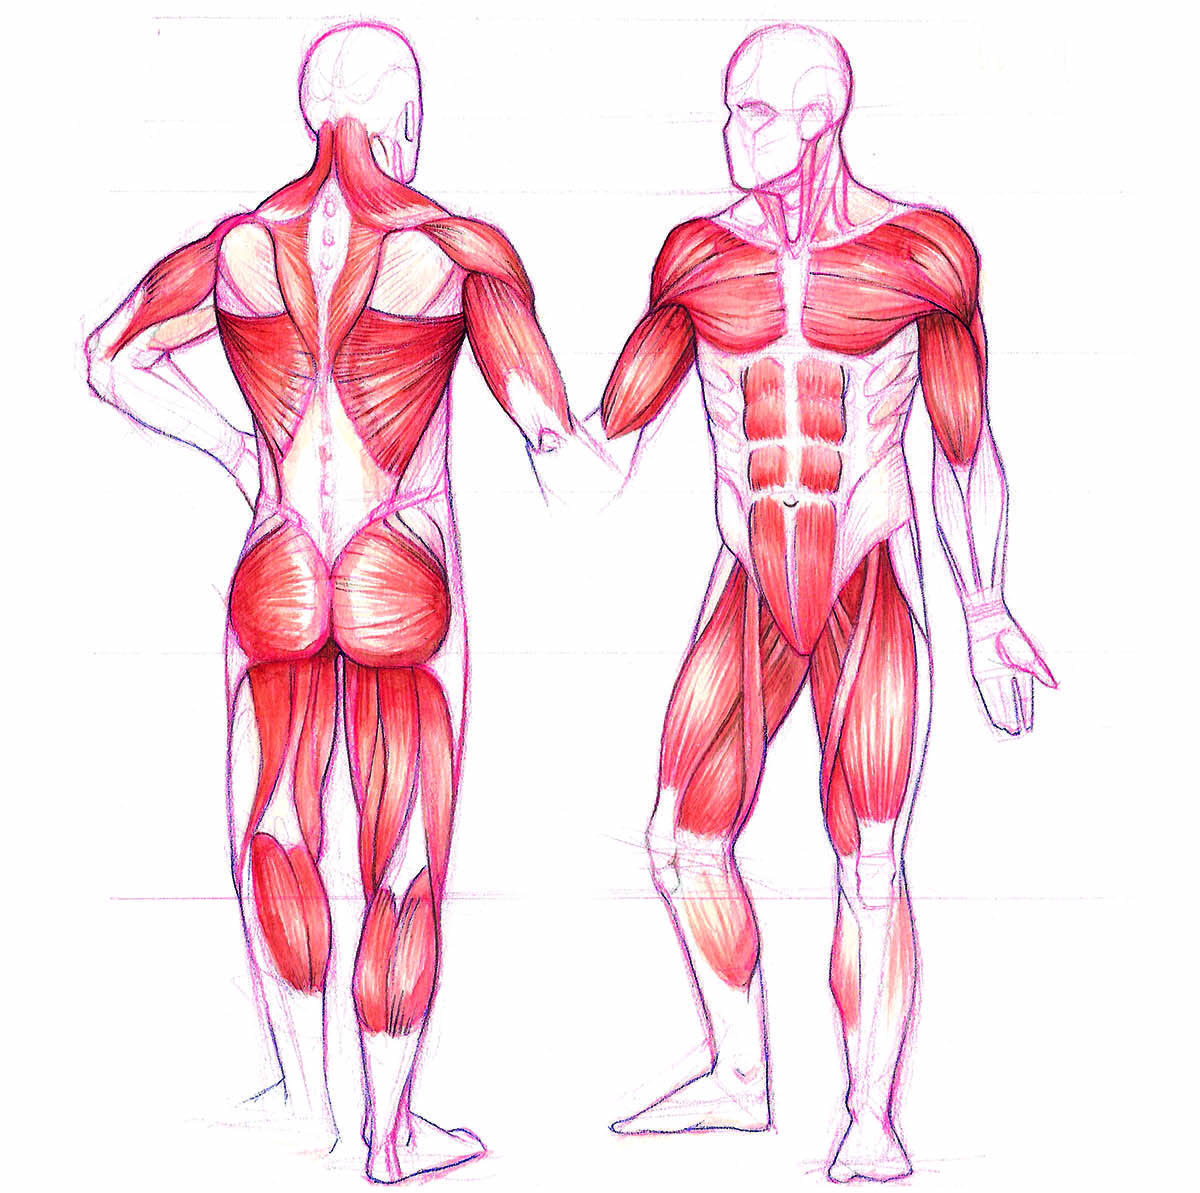 Fibras musculares: qué son, cómo se organizan, y su anatomía